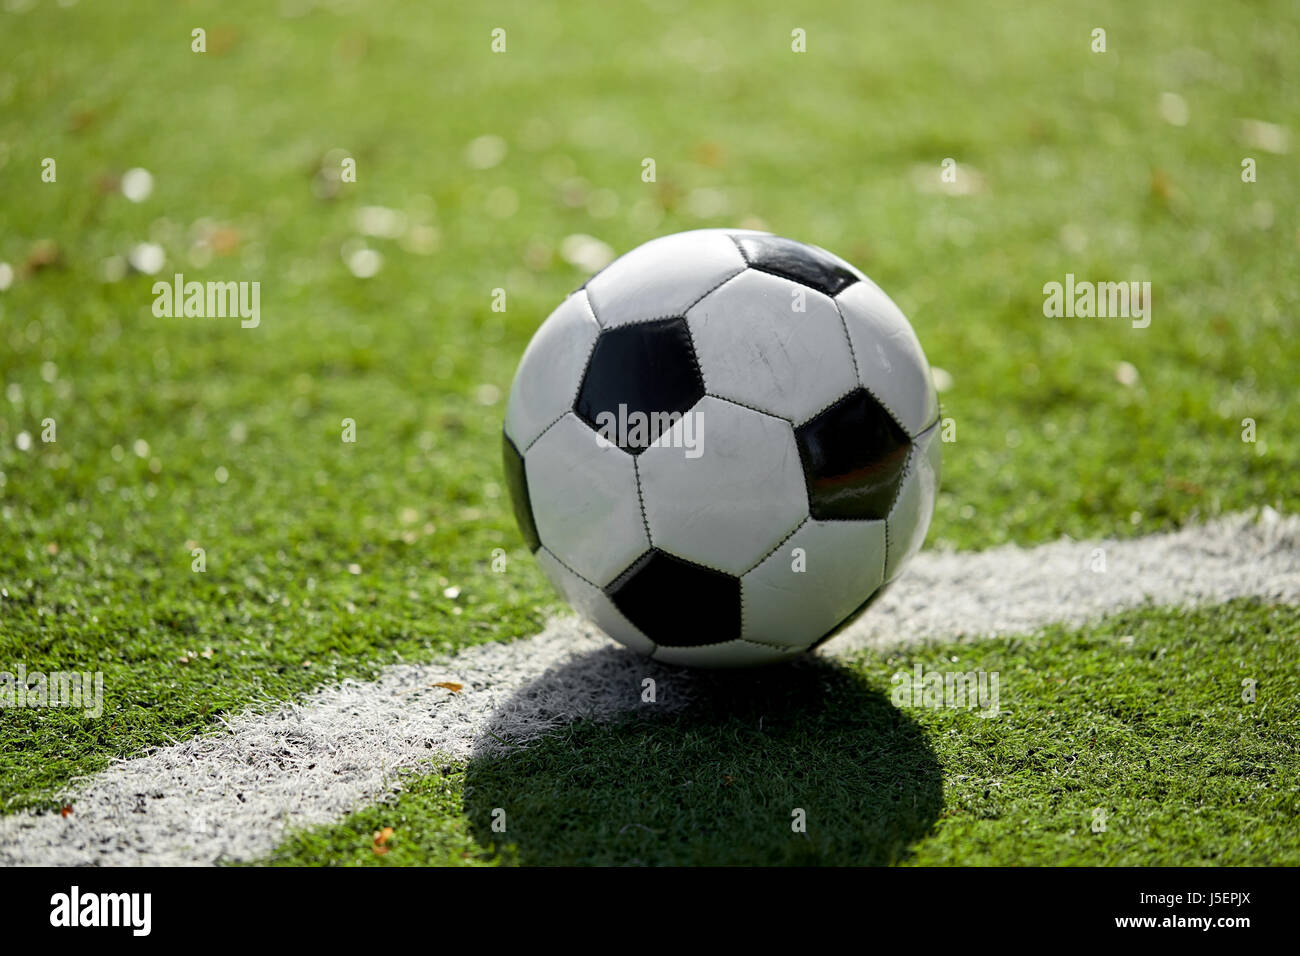 Fußball am Fußballplatz Stockfoto